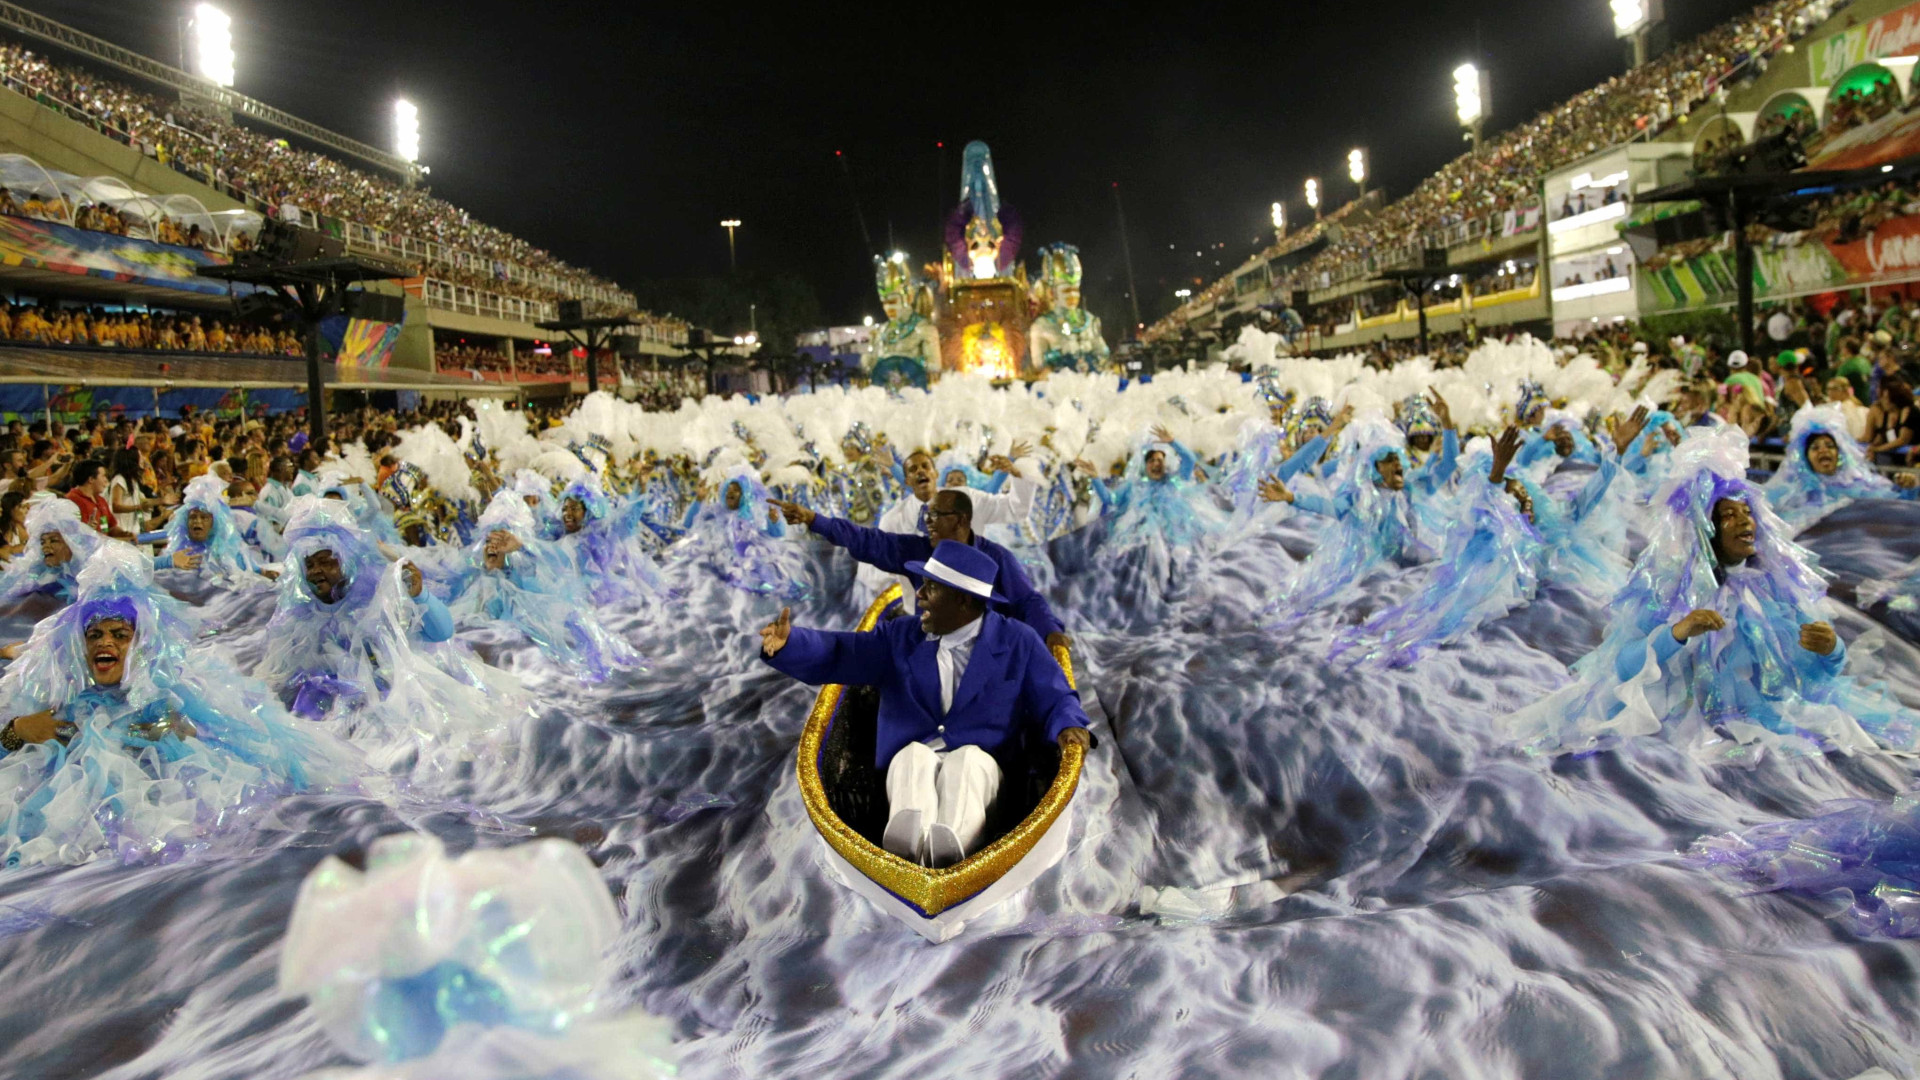 Carnaval de 2018 deverá movimentar R$ 6,25 bi no turismo